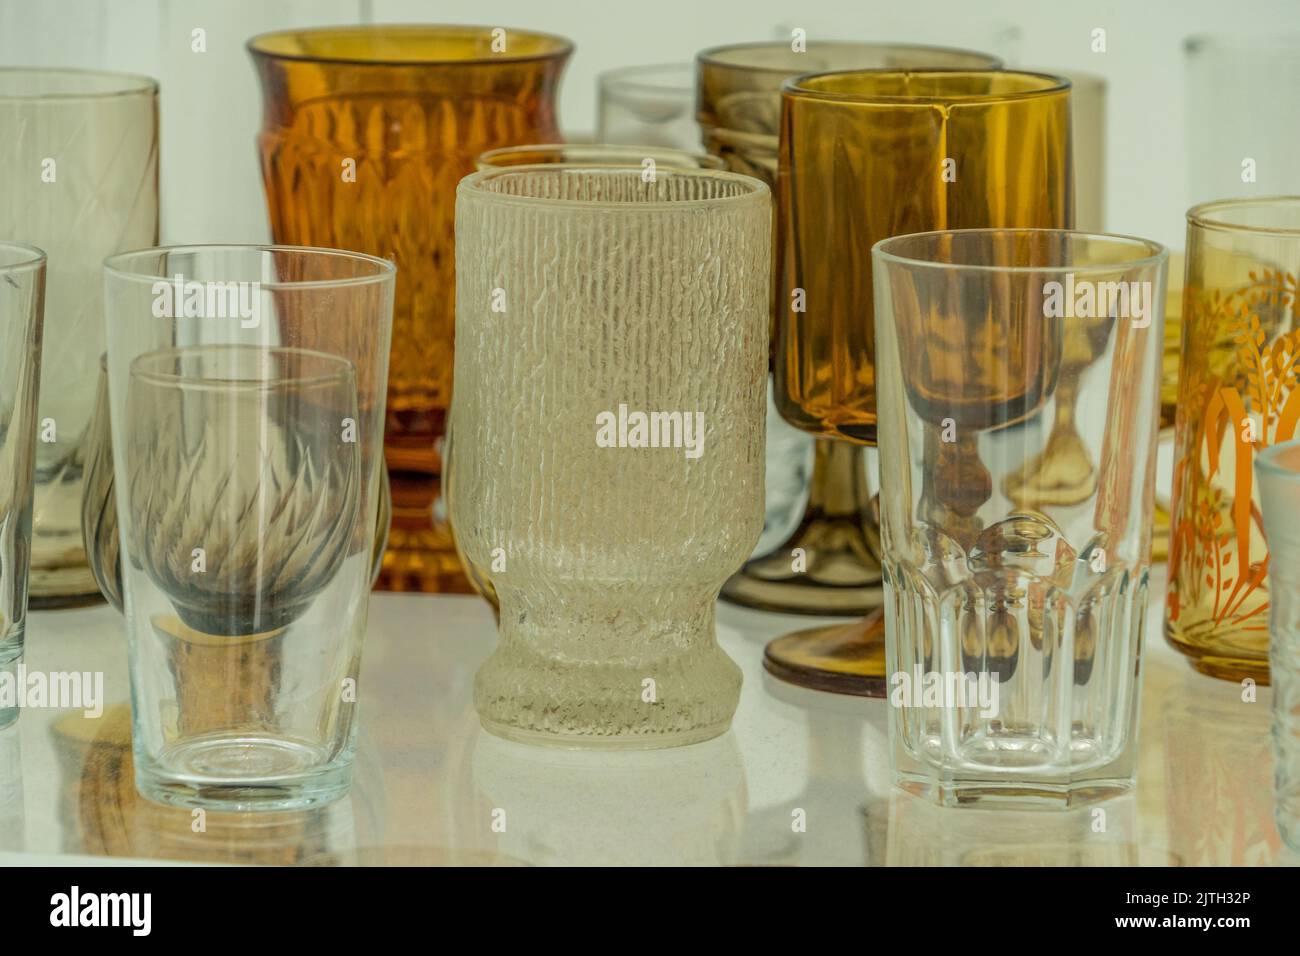 en los estantes de madera del interior de la habitación hay vasos con  textura y vasos de cristal naranja brillante idénticos y elegantes para  bebidas Fotografía de stock - Alamy